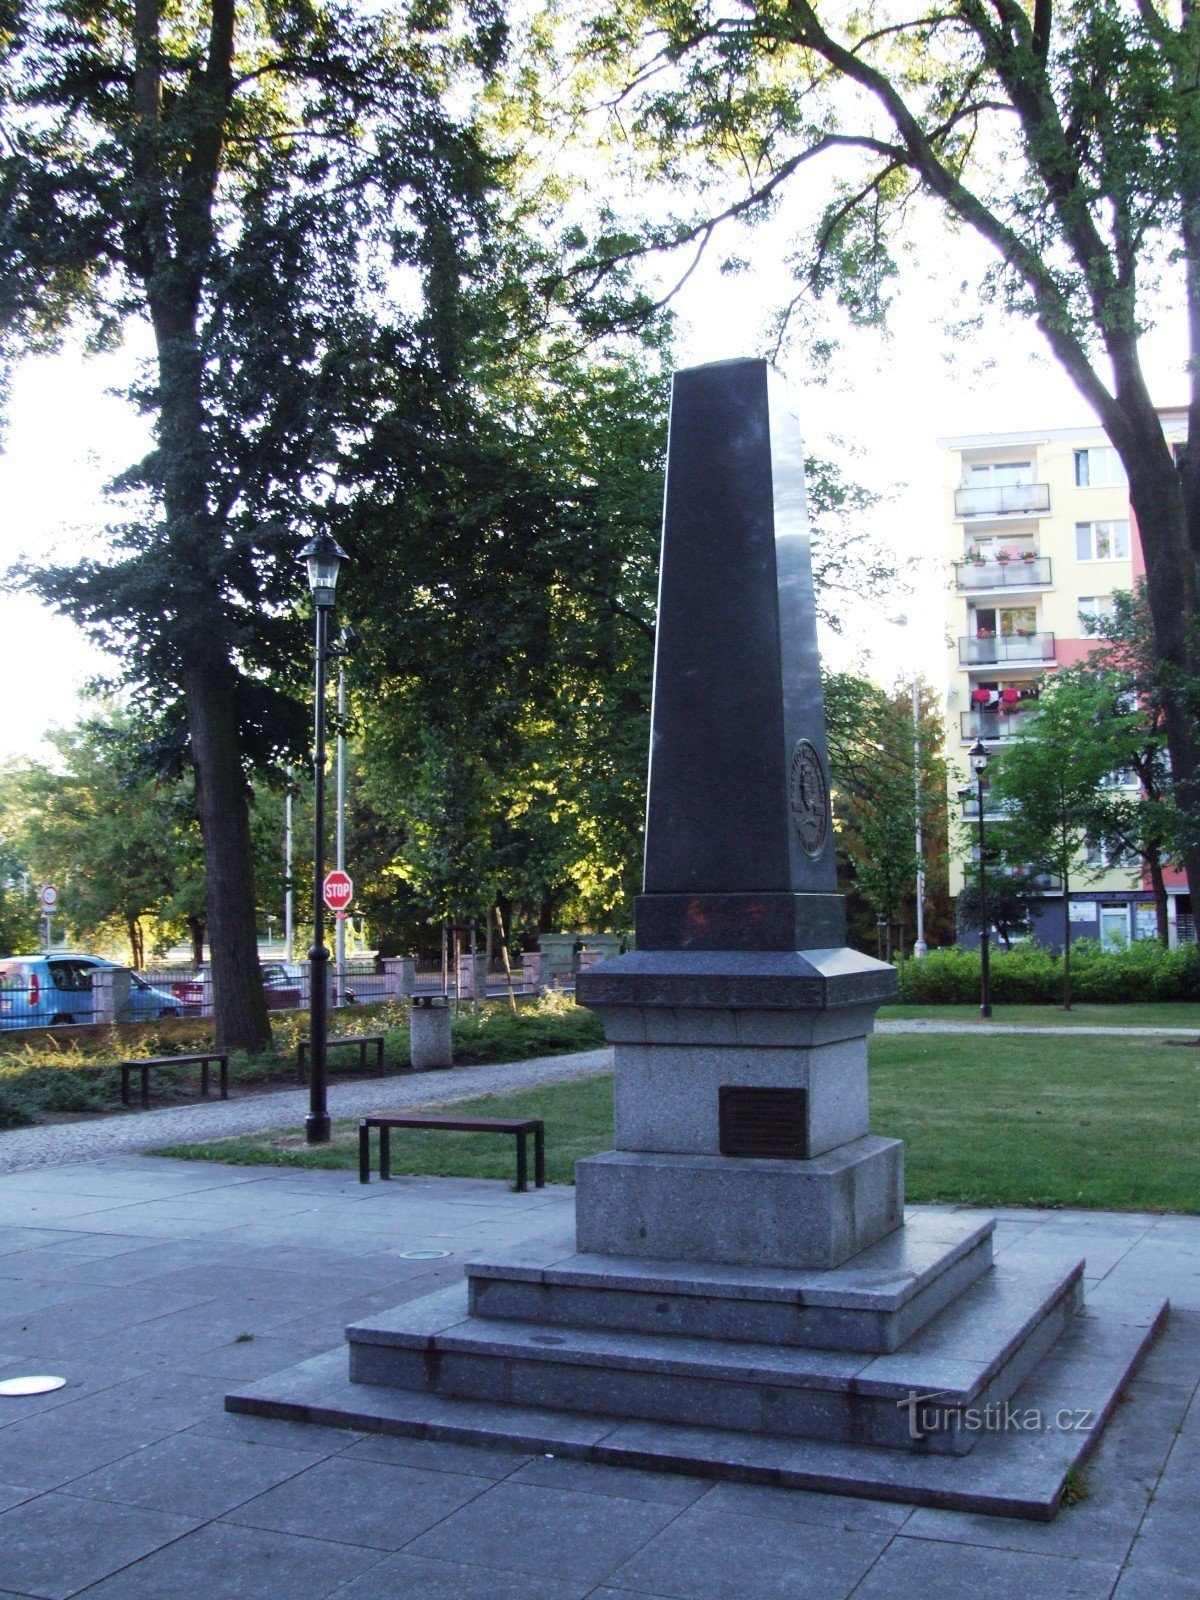 Đài tưởng niệm để tưởng nhớ các nạn nhân của cuộc chiến tranh